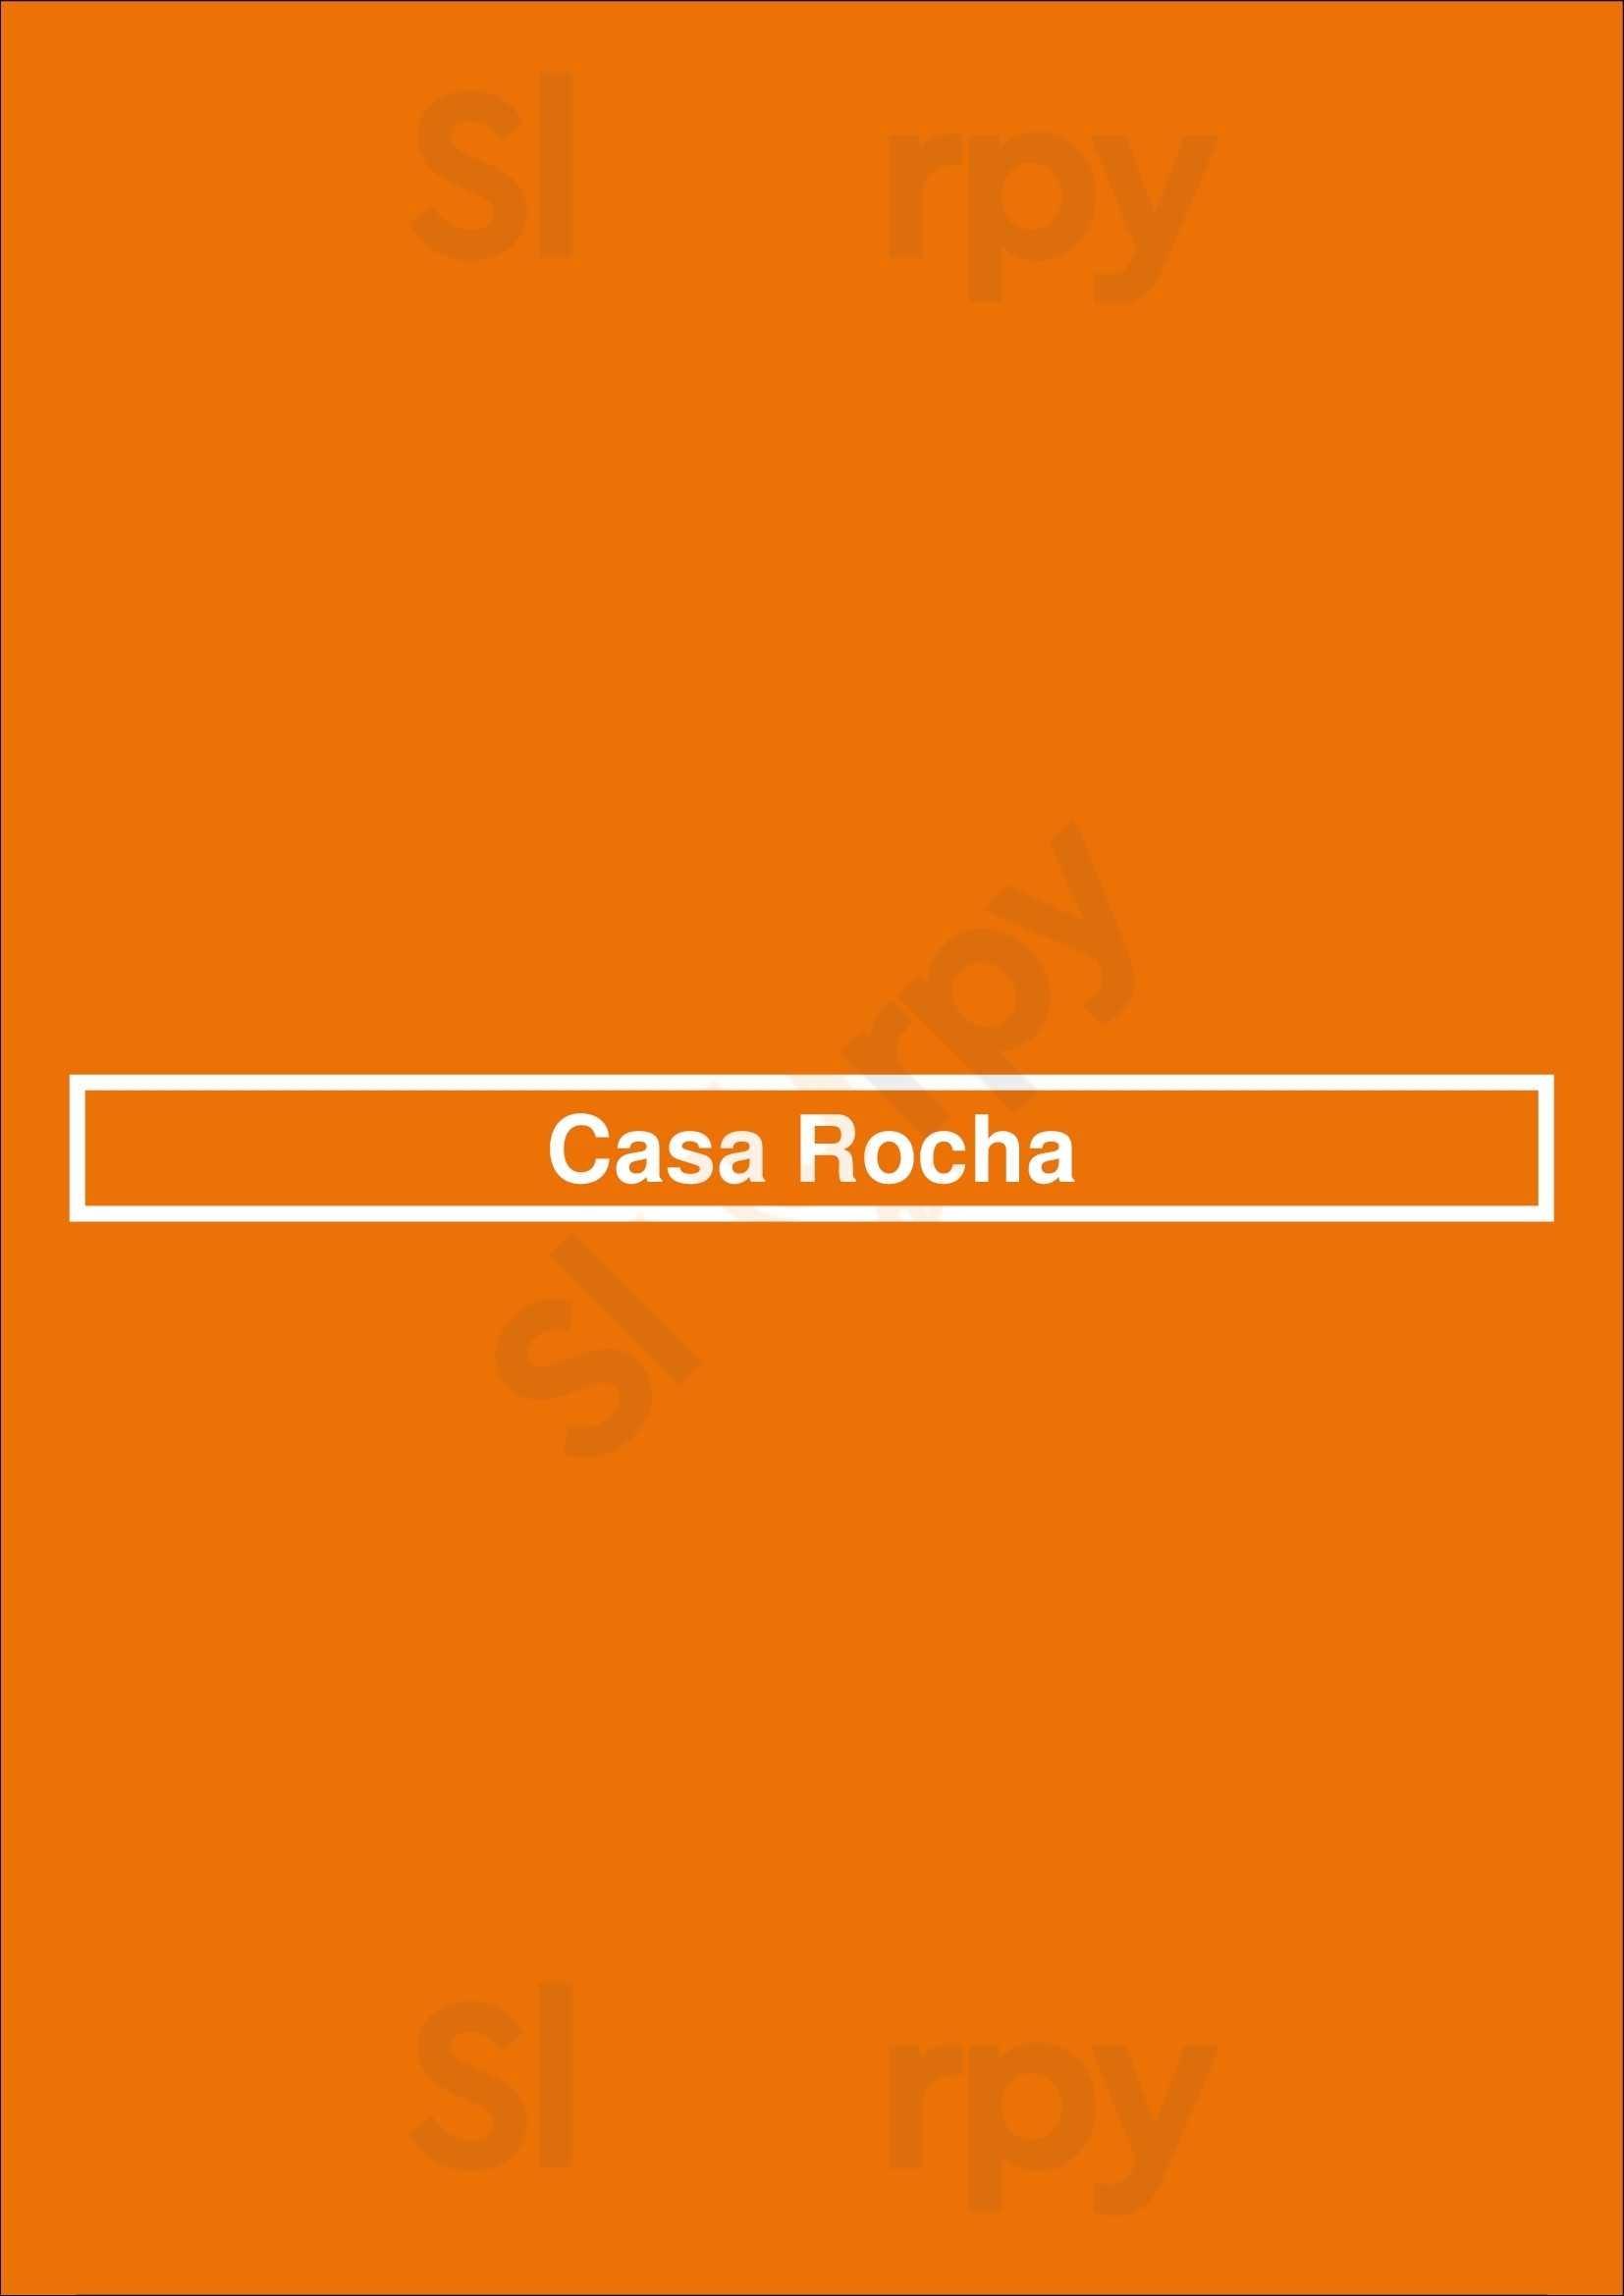 Casa Rocha Porto Menu - 1